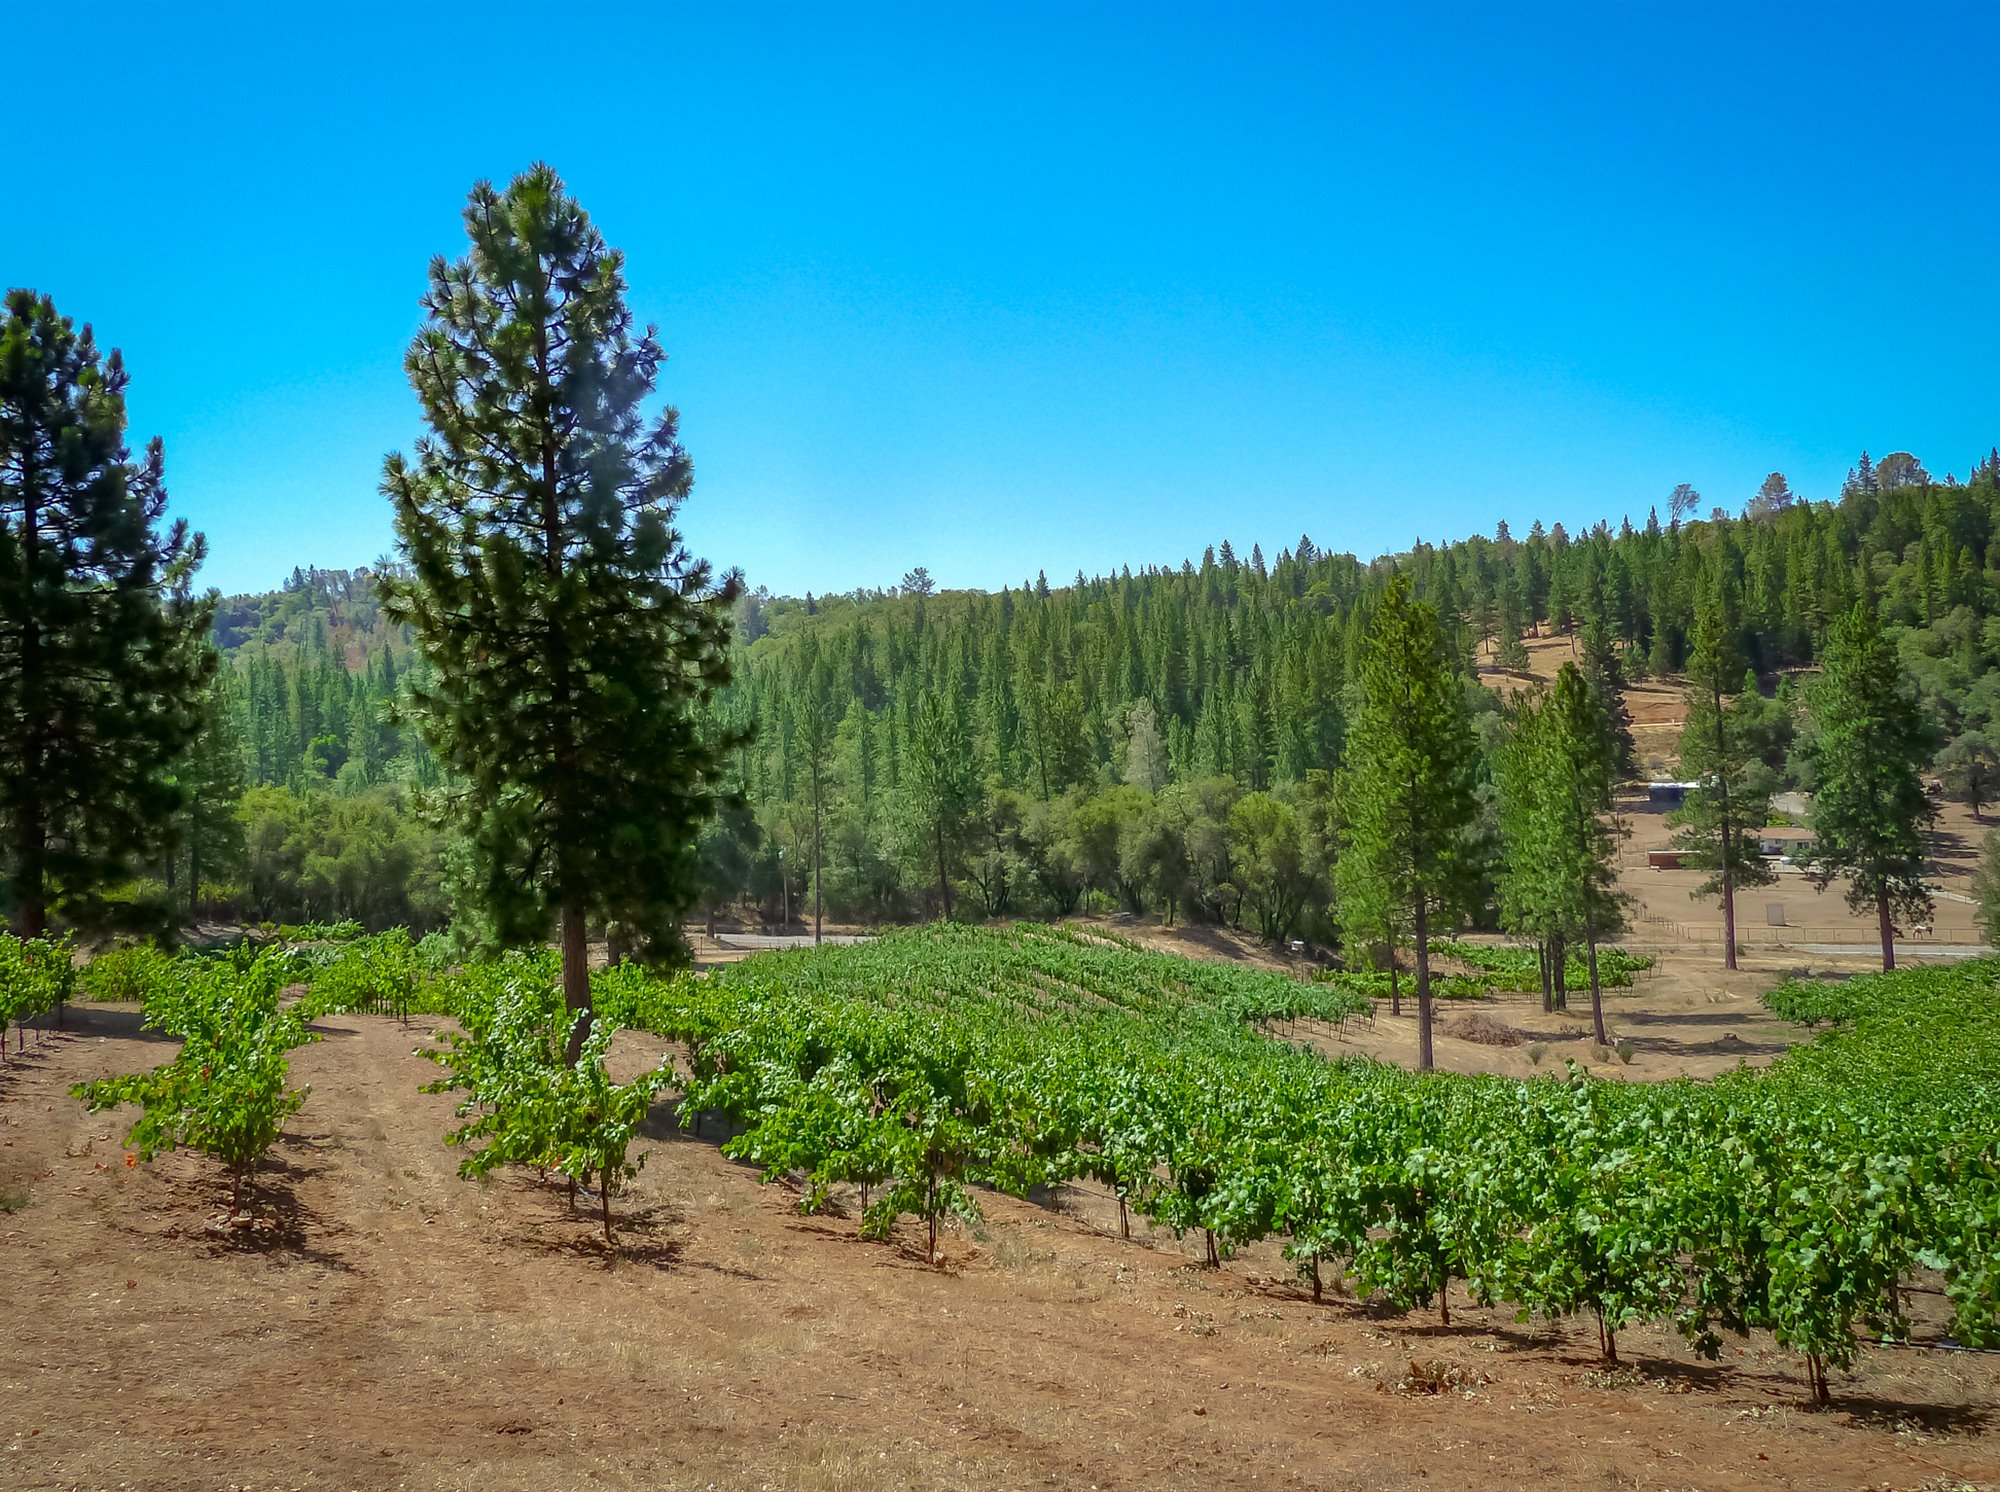 Sierra Foothills vineyards and wineries